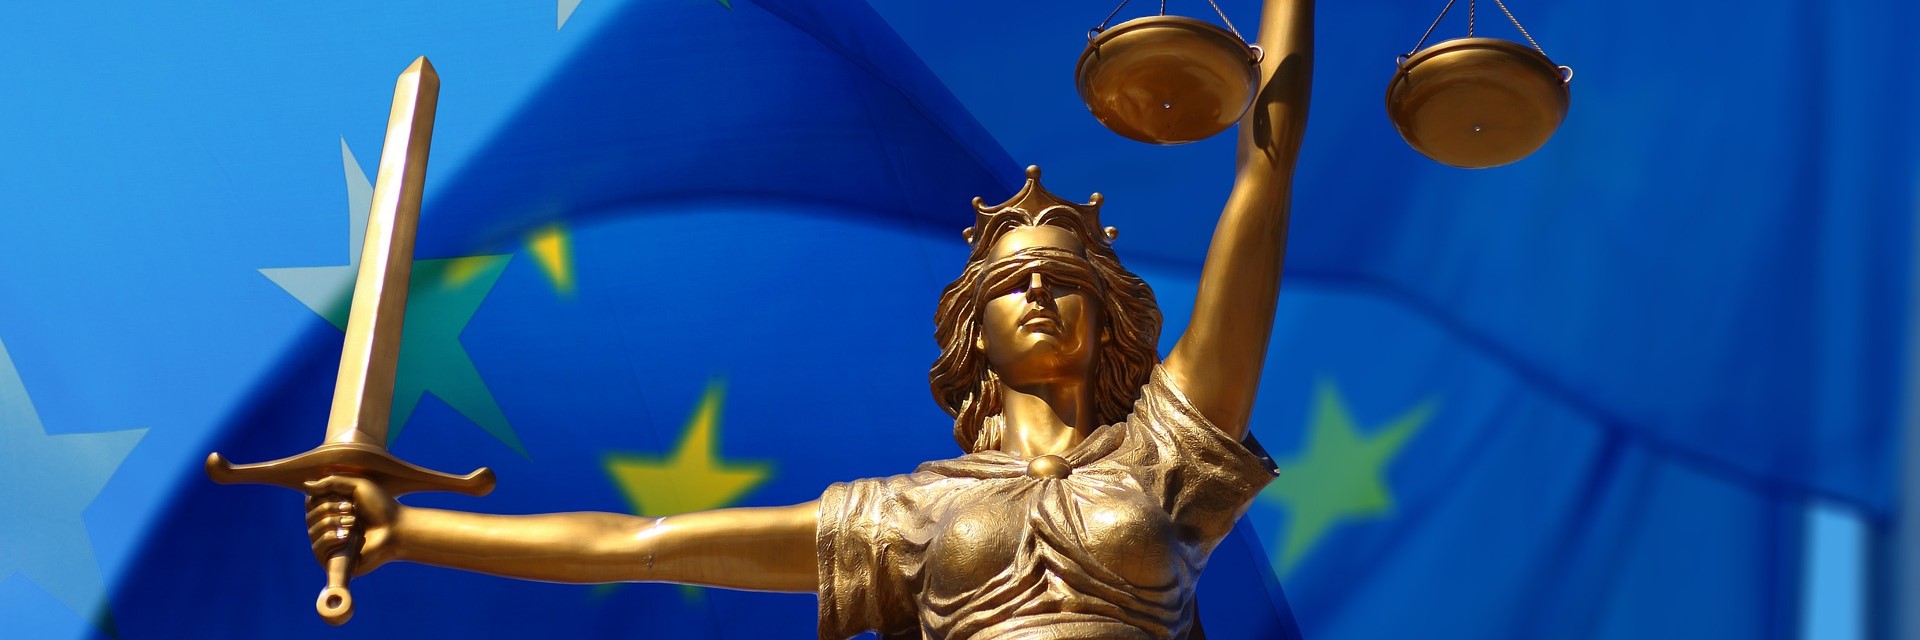 Römische Göttin Justitia vor einer europäischen Flagge